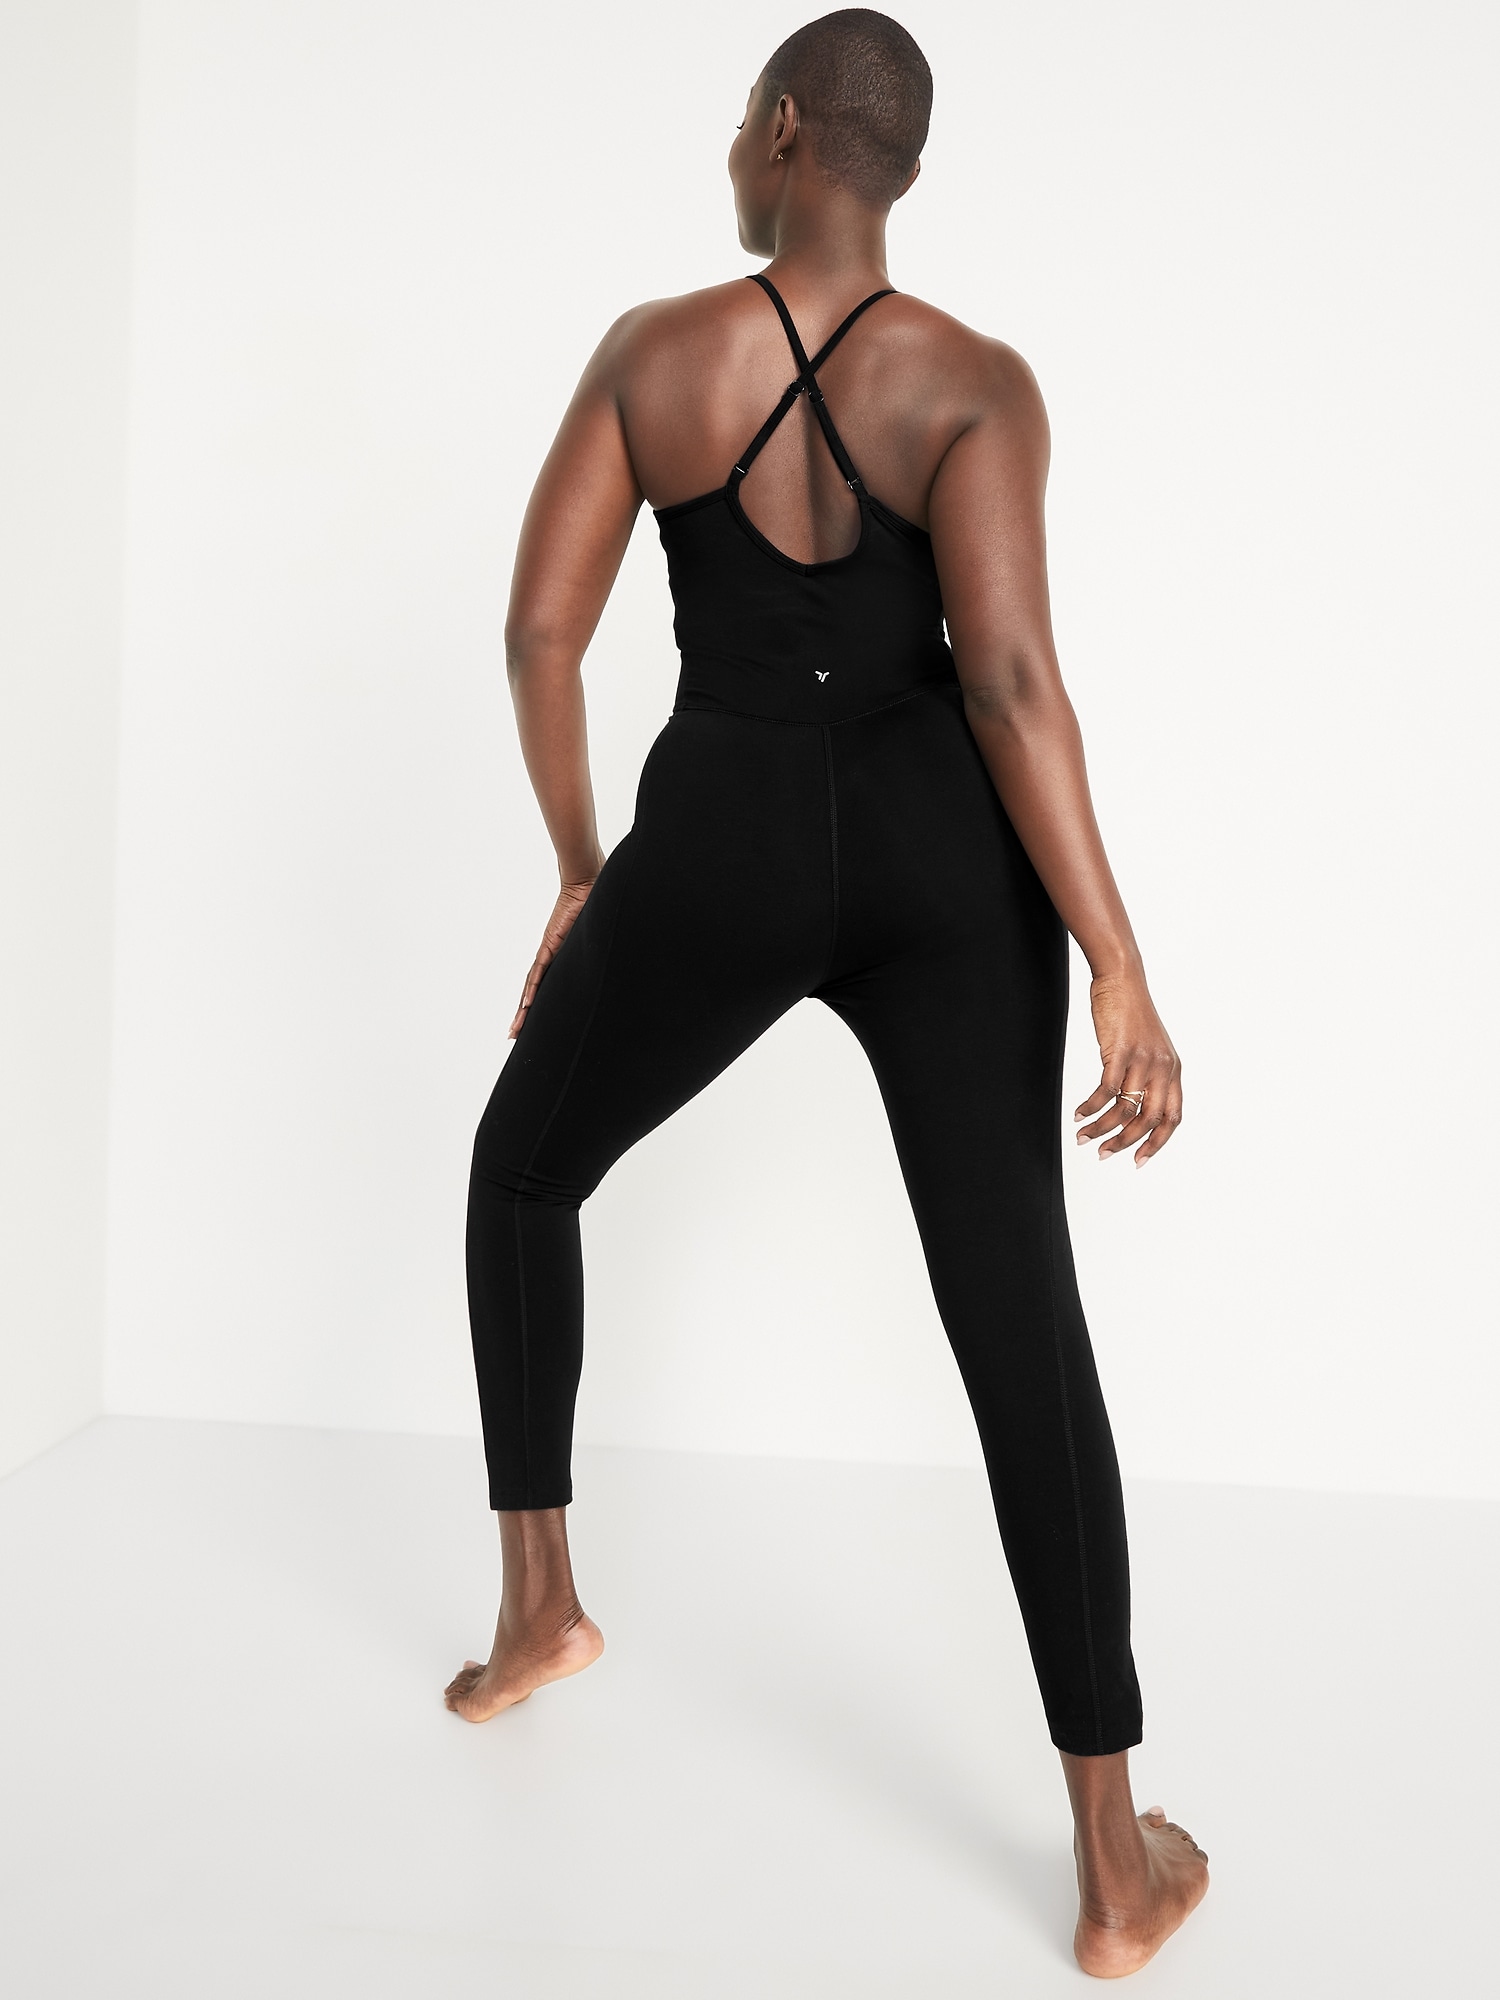 Old Navy Women's Black 6 inch inseam PowerChill Cami Bodysuit Size